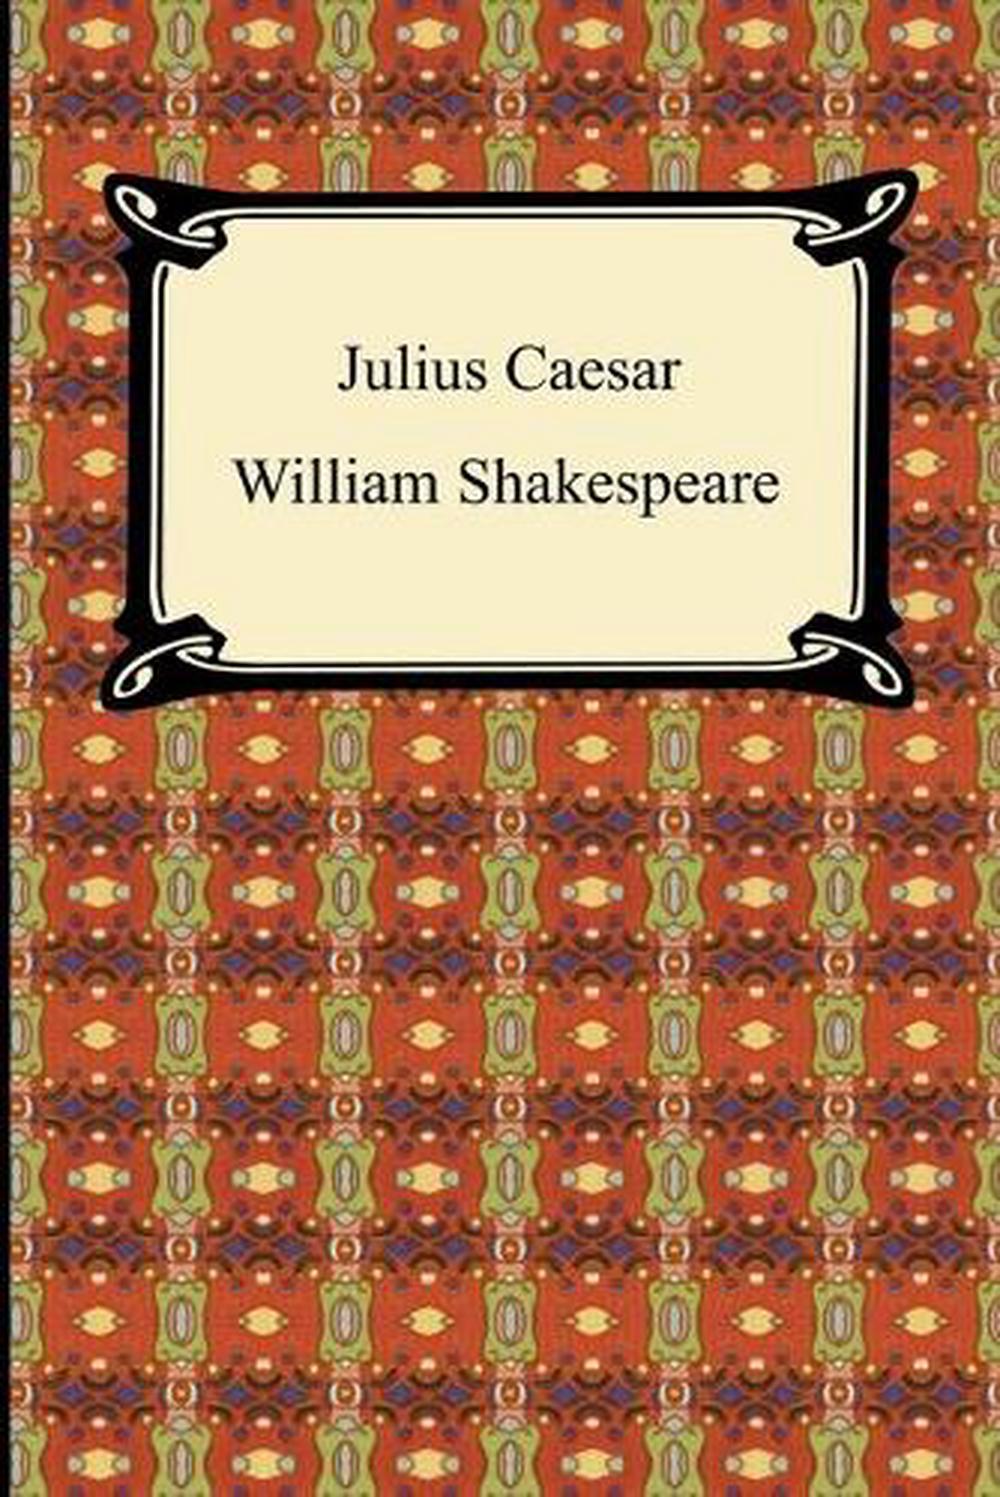 julius caesar shakespeare